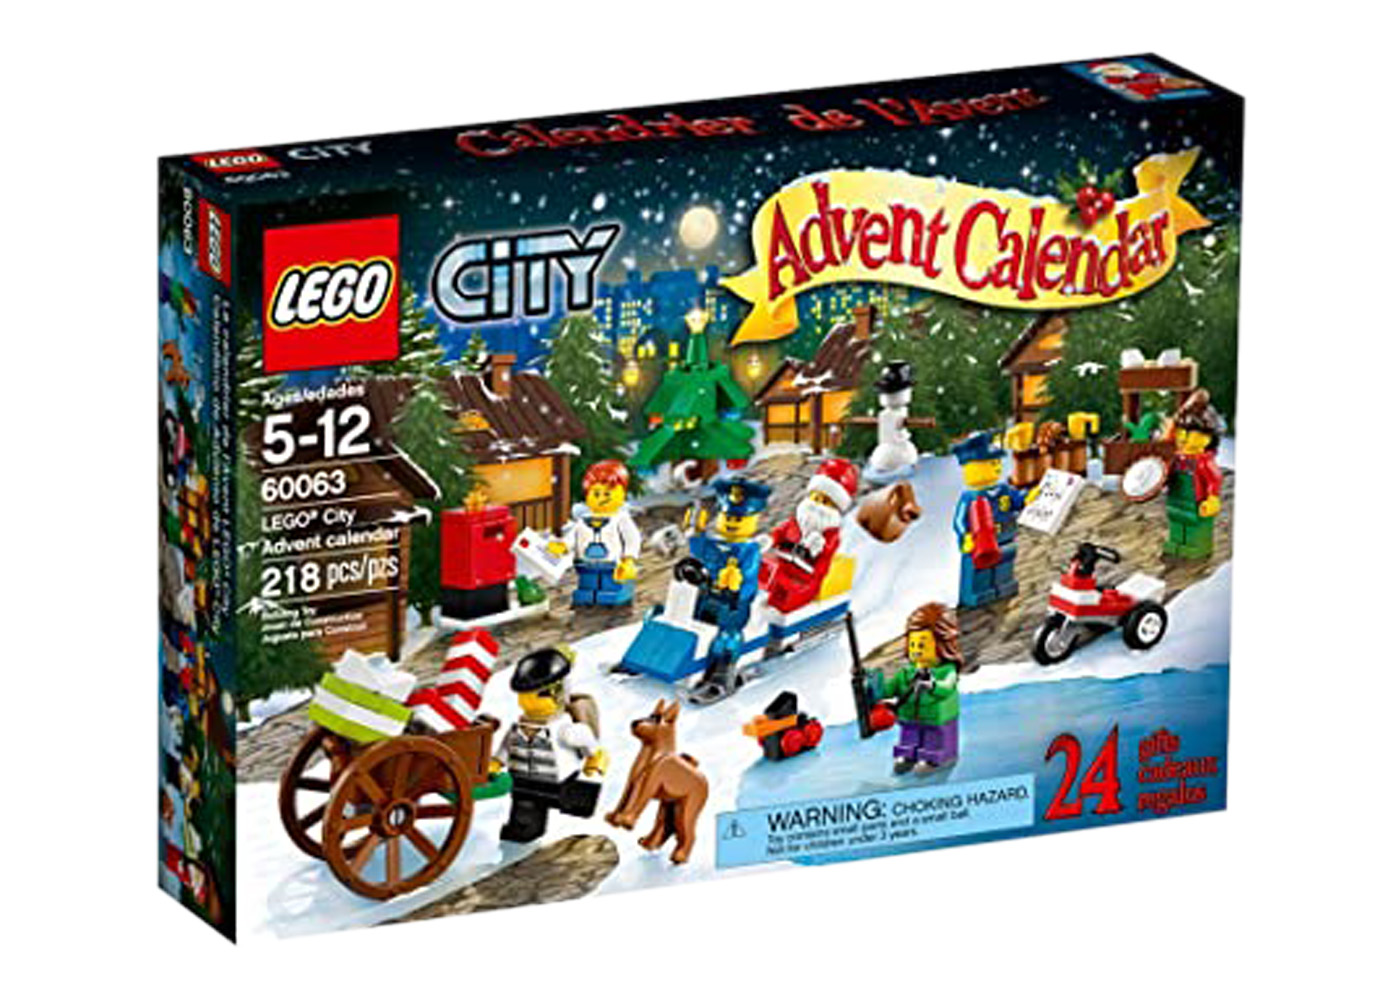 LEGO City Advent Calendar Set 7553 - GB